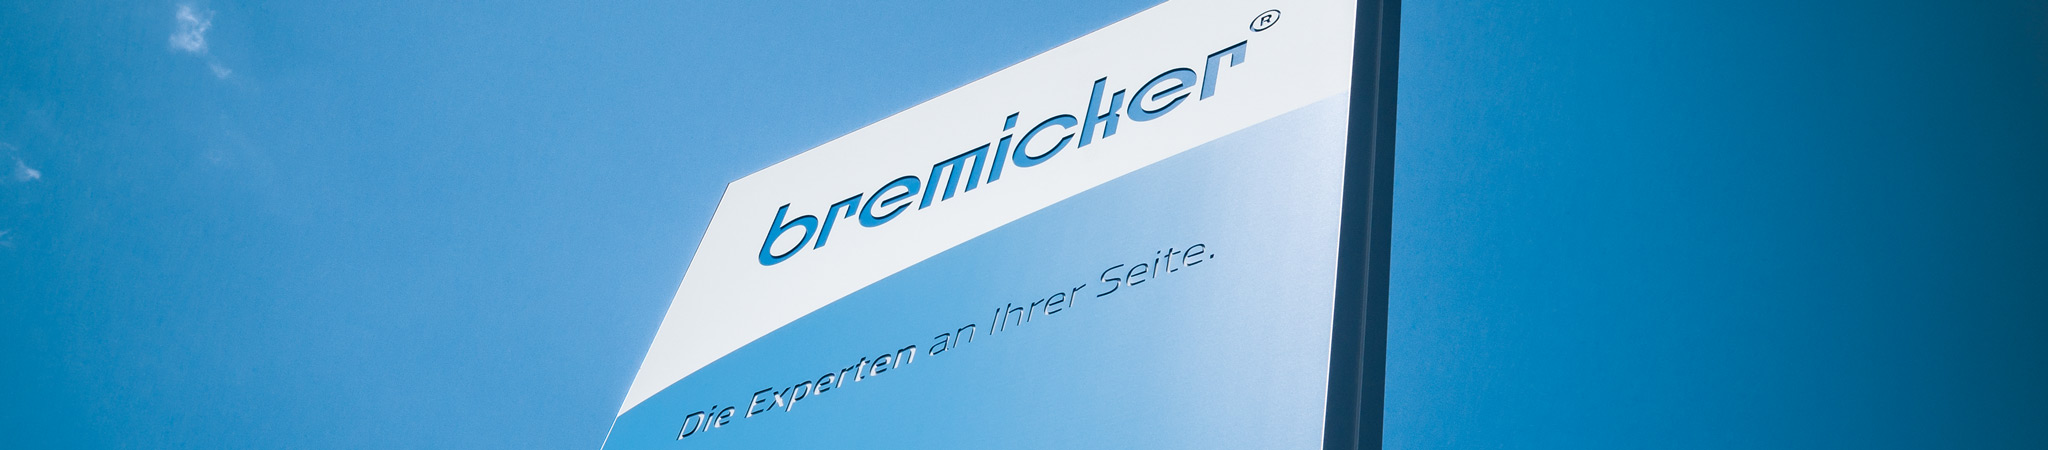 Ueber-Bremicker-Verkehrstechnik-Header